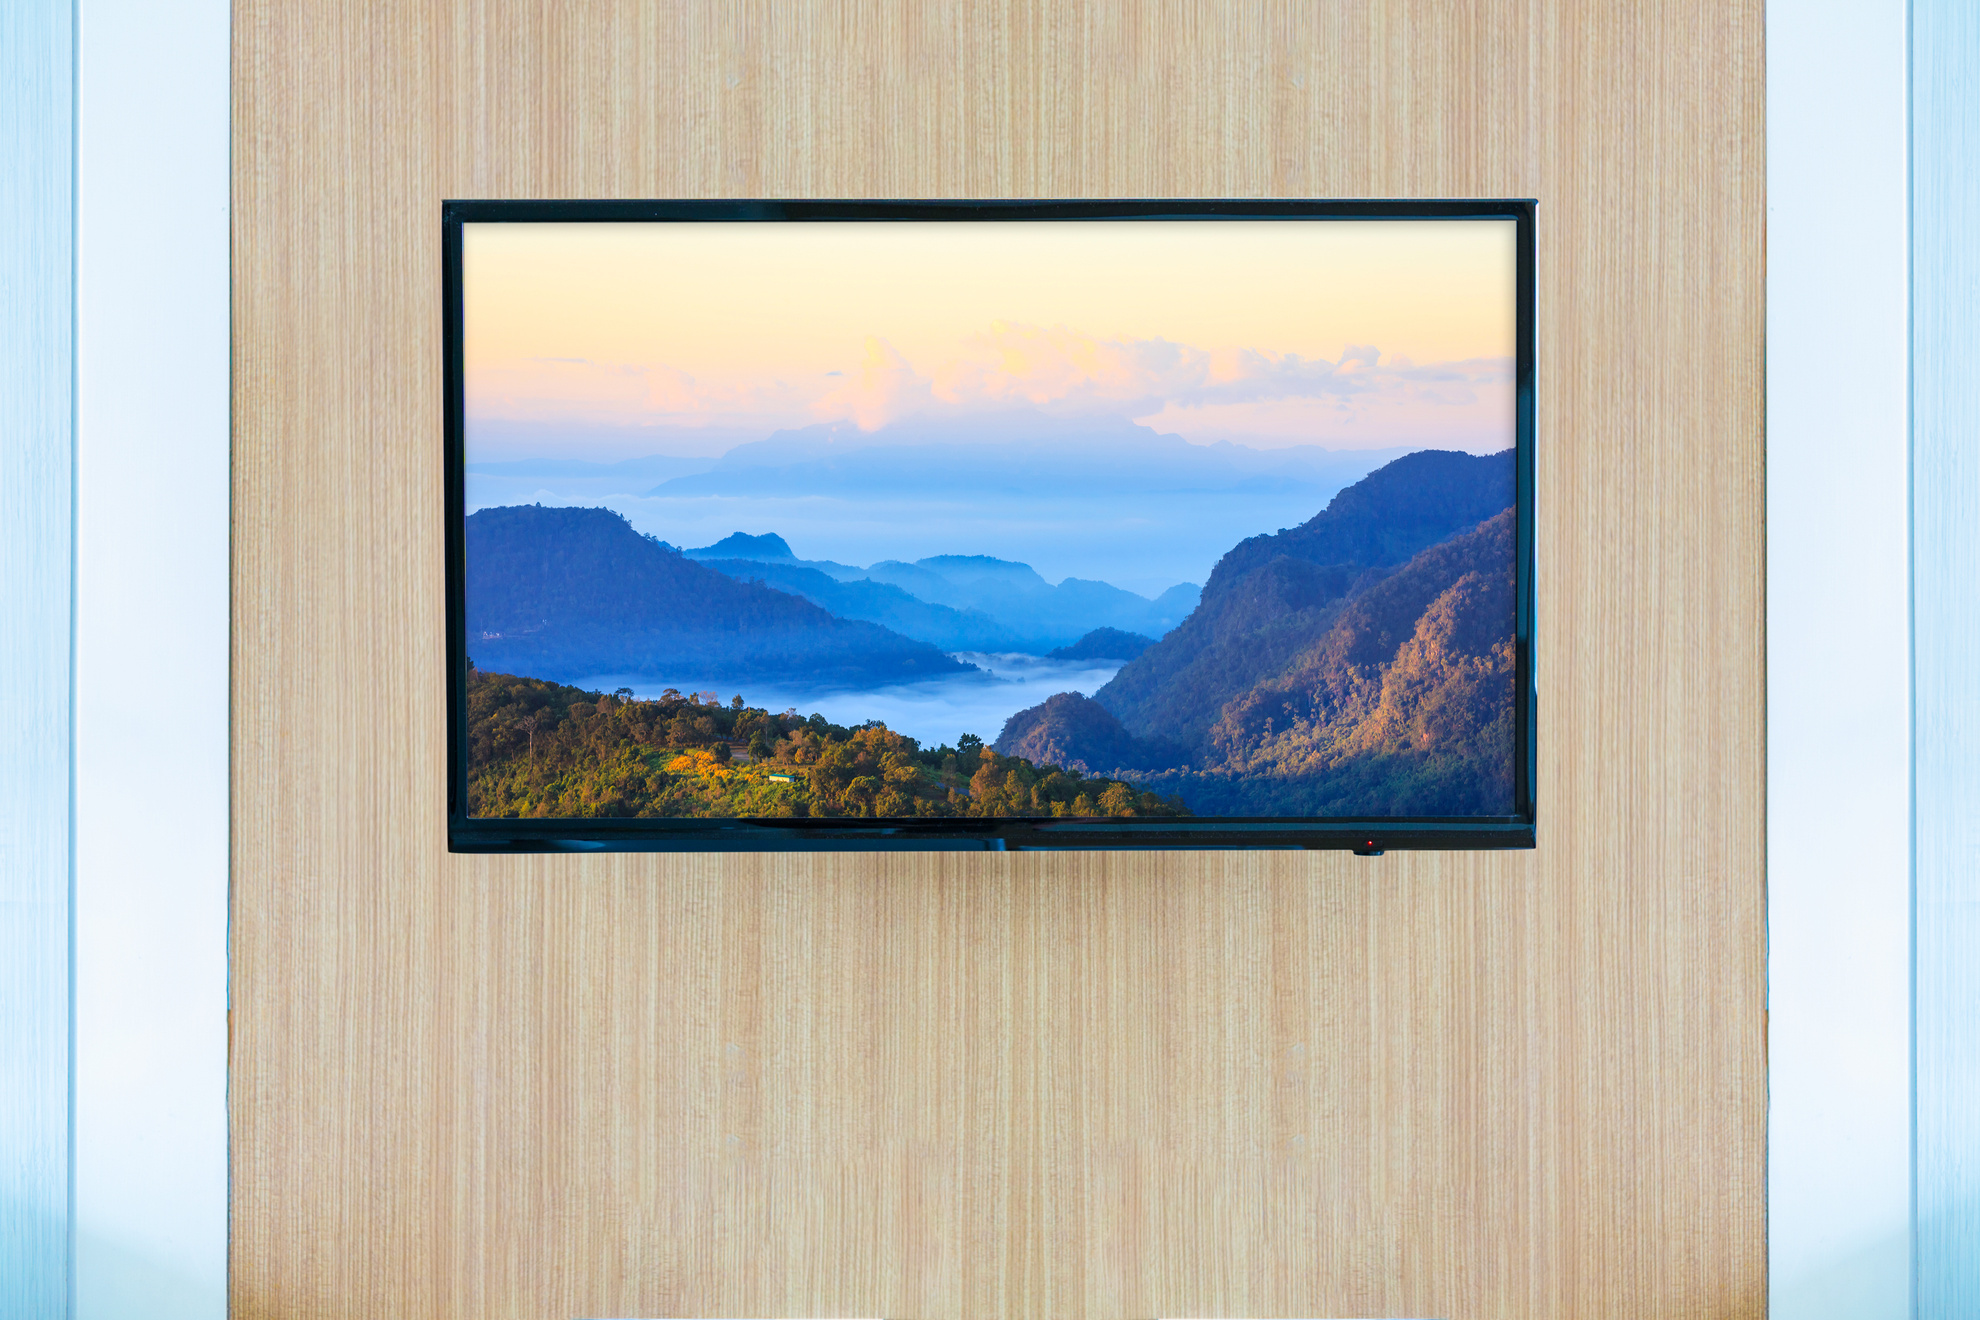 Black LED tv television screen mockup. Landscape on monitor